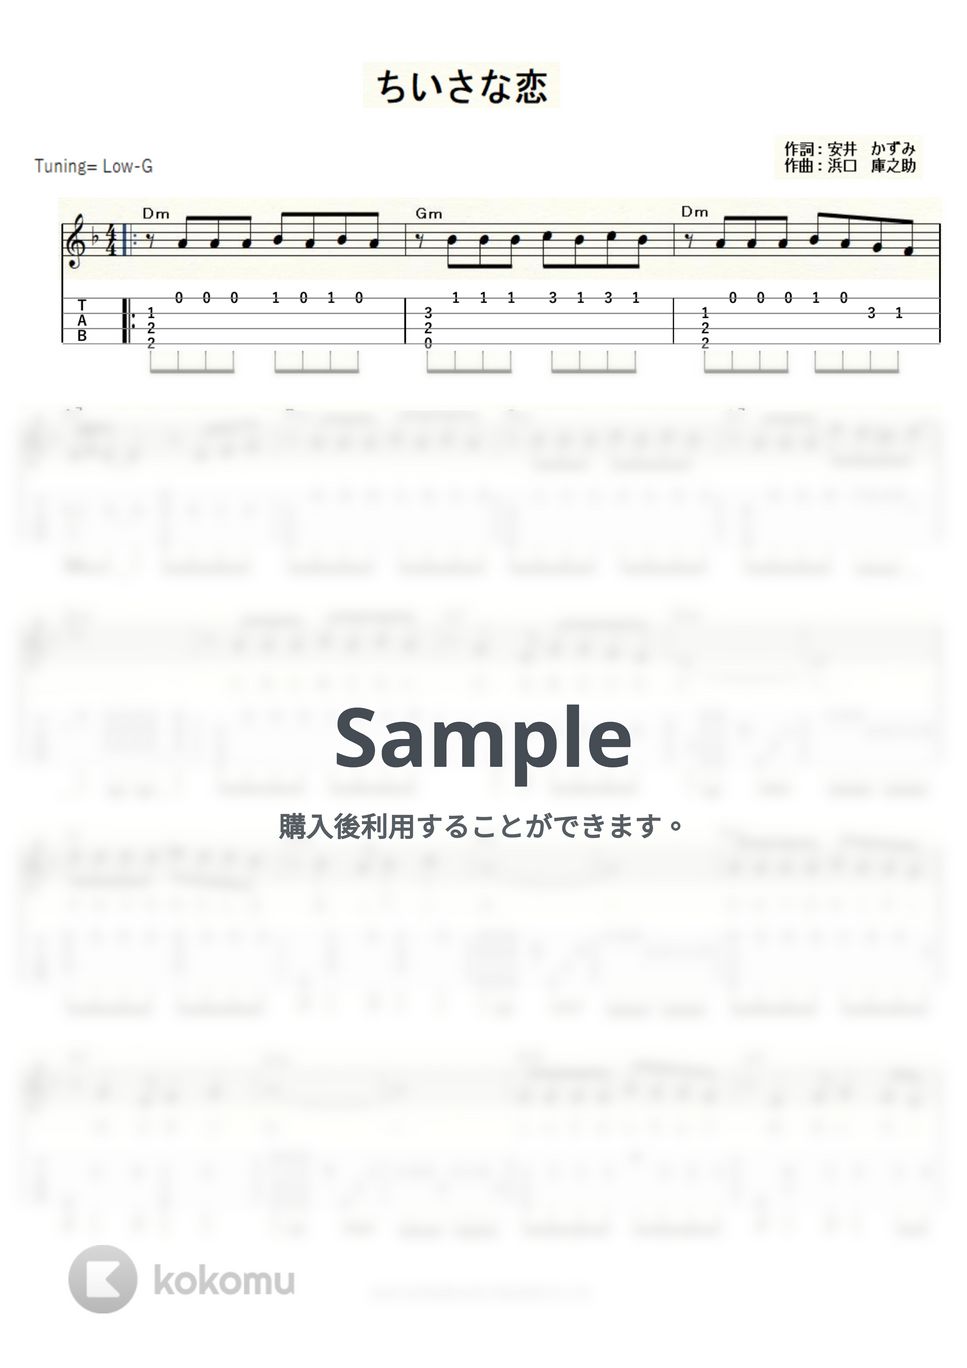 天地真理 - ちいさな恋 (ｳｸﾚﾚｿﾛ/Low-G/中級) by ukulelepapa